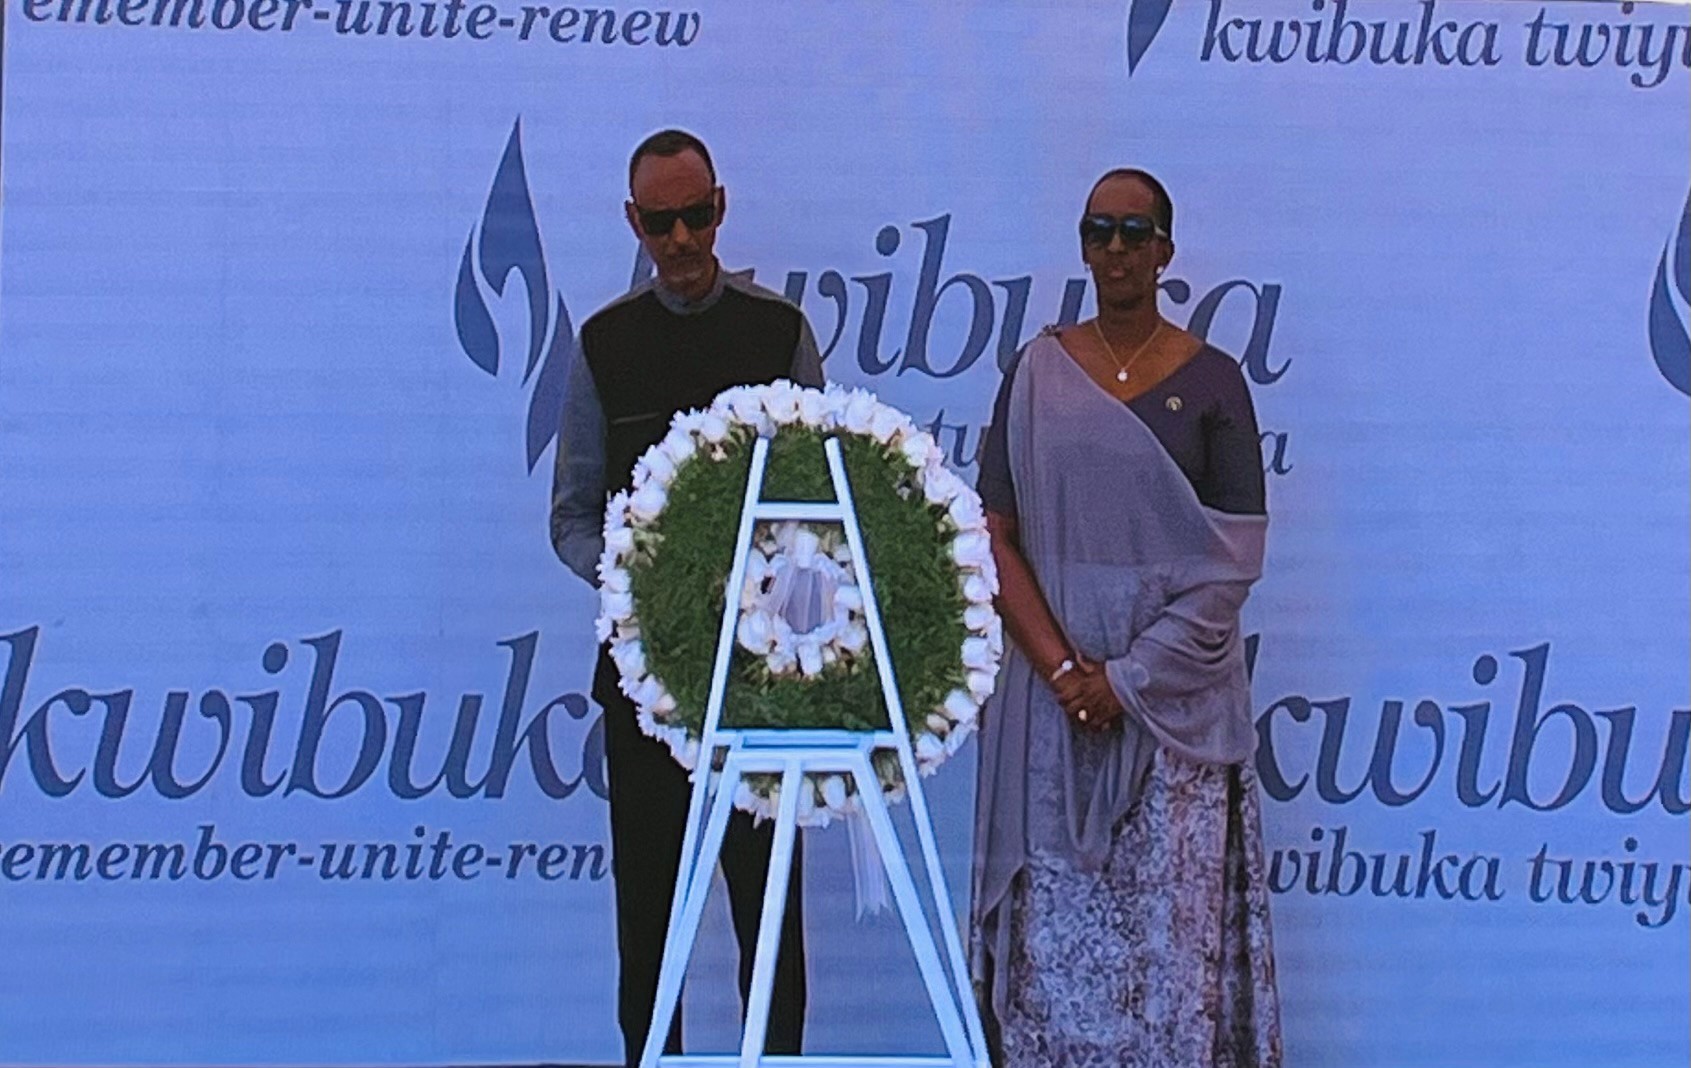 La Présidente Gatti Santana conclut sa visite officielle au Rwanda à l’occasion de Kwibuka29